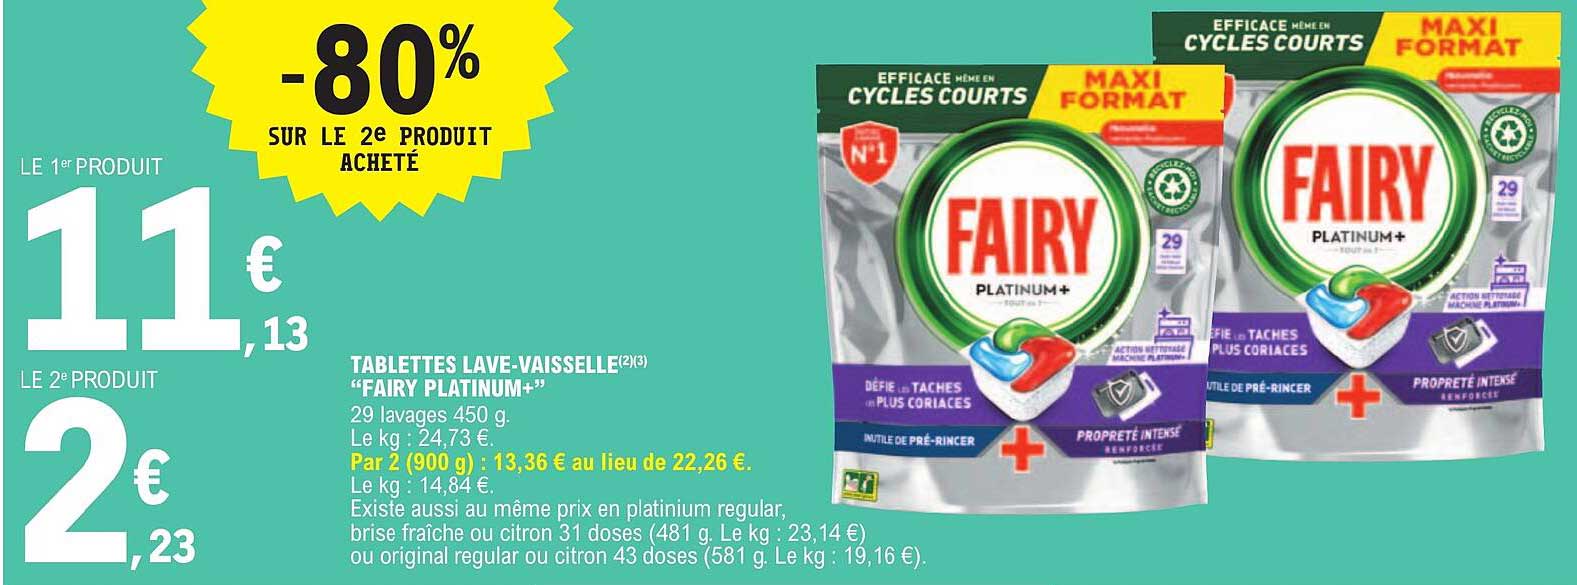 Promo Tablette Lave Vaisselle Fairy chez E.Leclerc